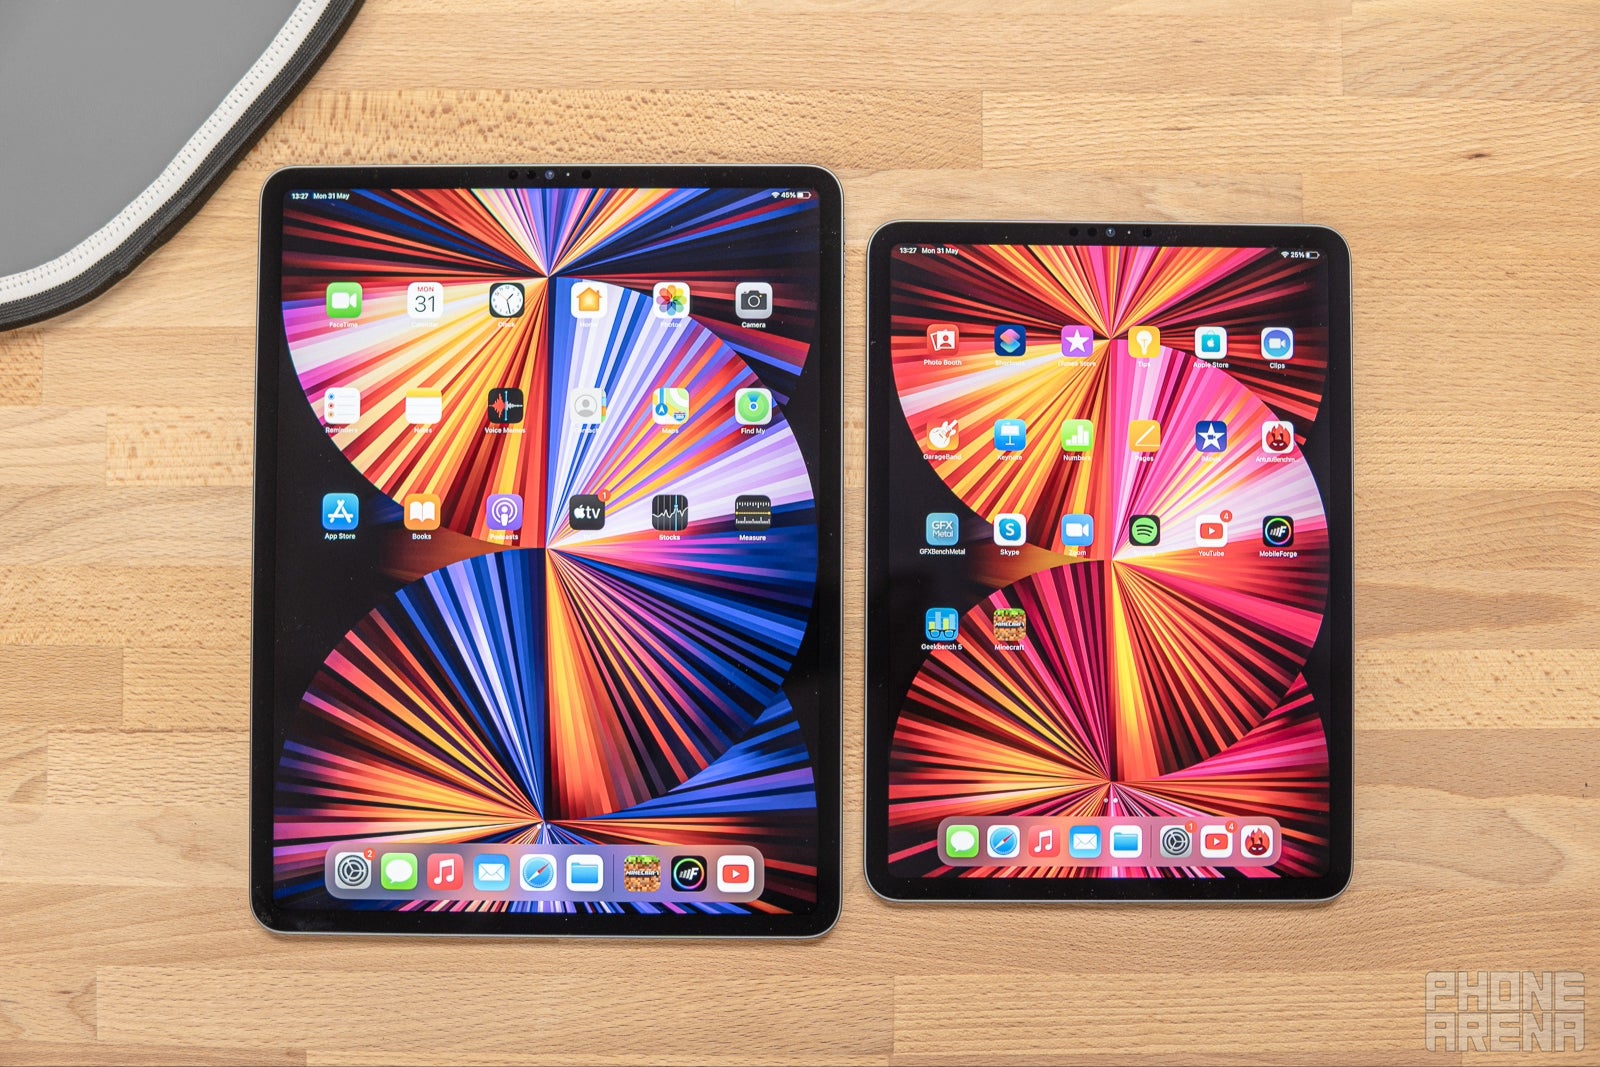 iPad Pro de 12,9 polegadas com mini-LED ao lado do iPad Pro de 11 polegadas com LCD (crédito da imagem – PhoneArena) - Afinal, não há tela mini-LED para o suposto iPad Air de 12,9 polegadas: LCD disse permanecer